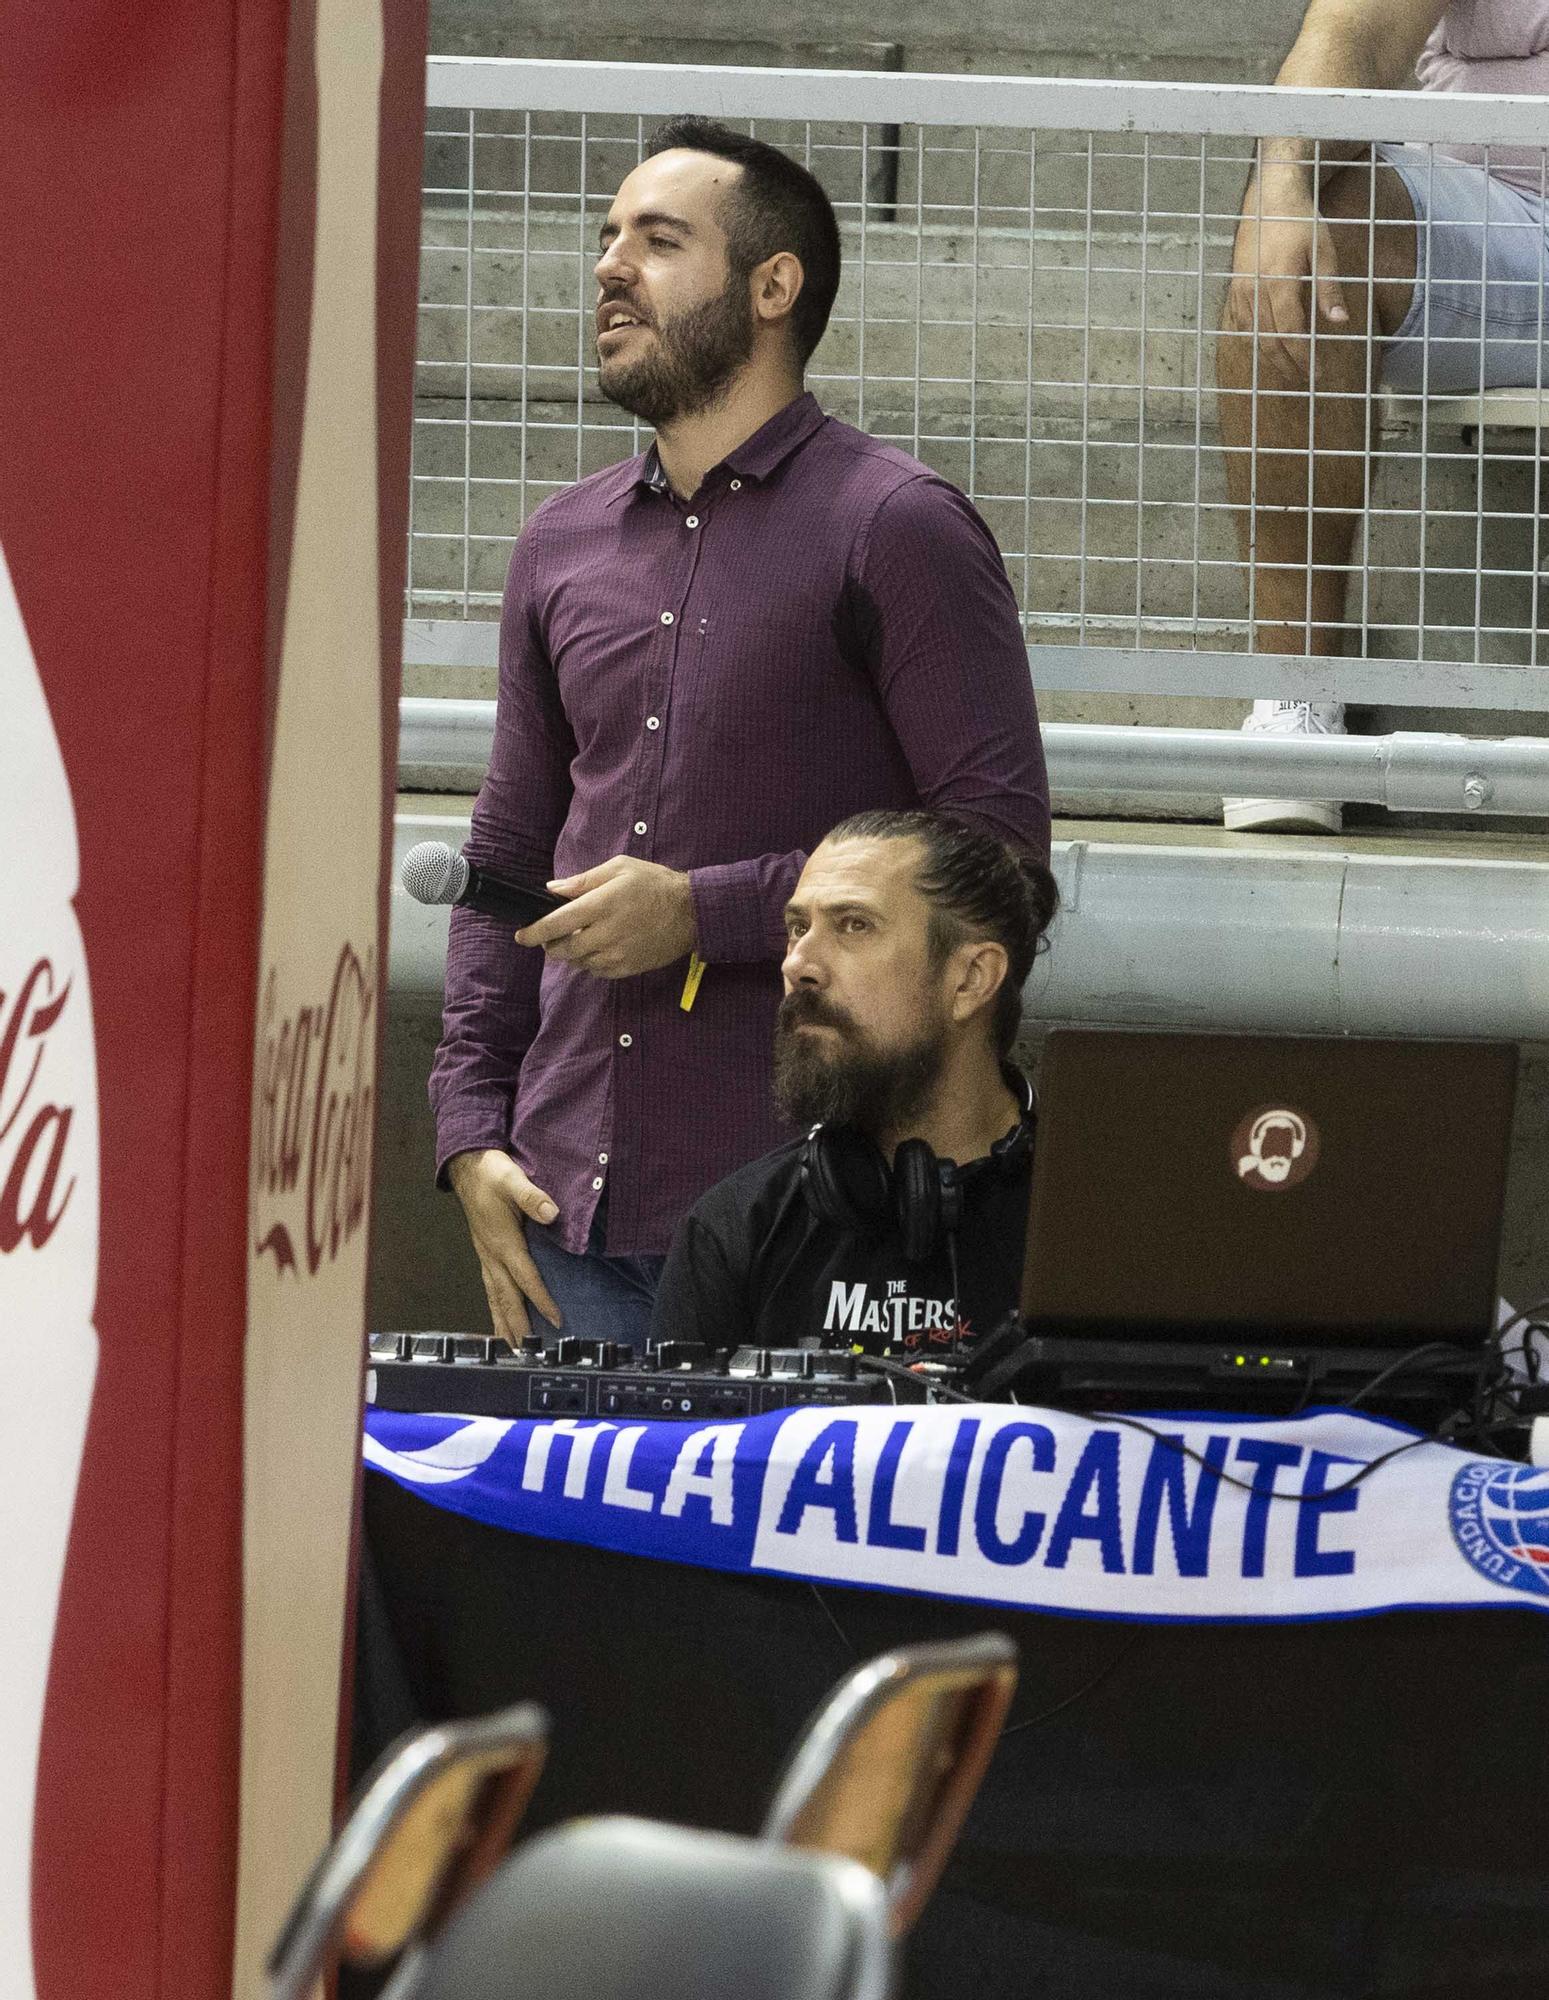 El HLA Alicante cae derrotado ante un superior Zunder Palencia